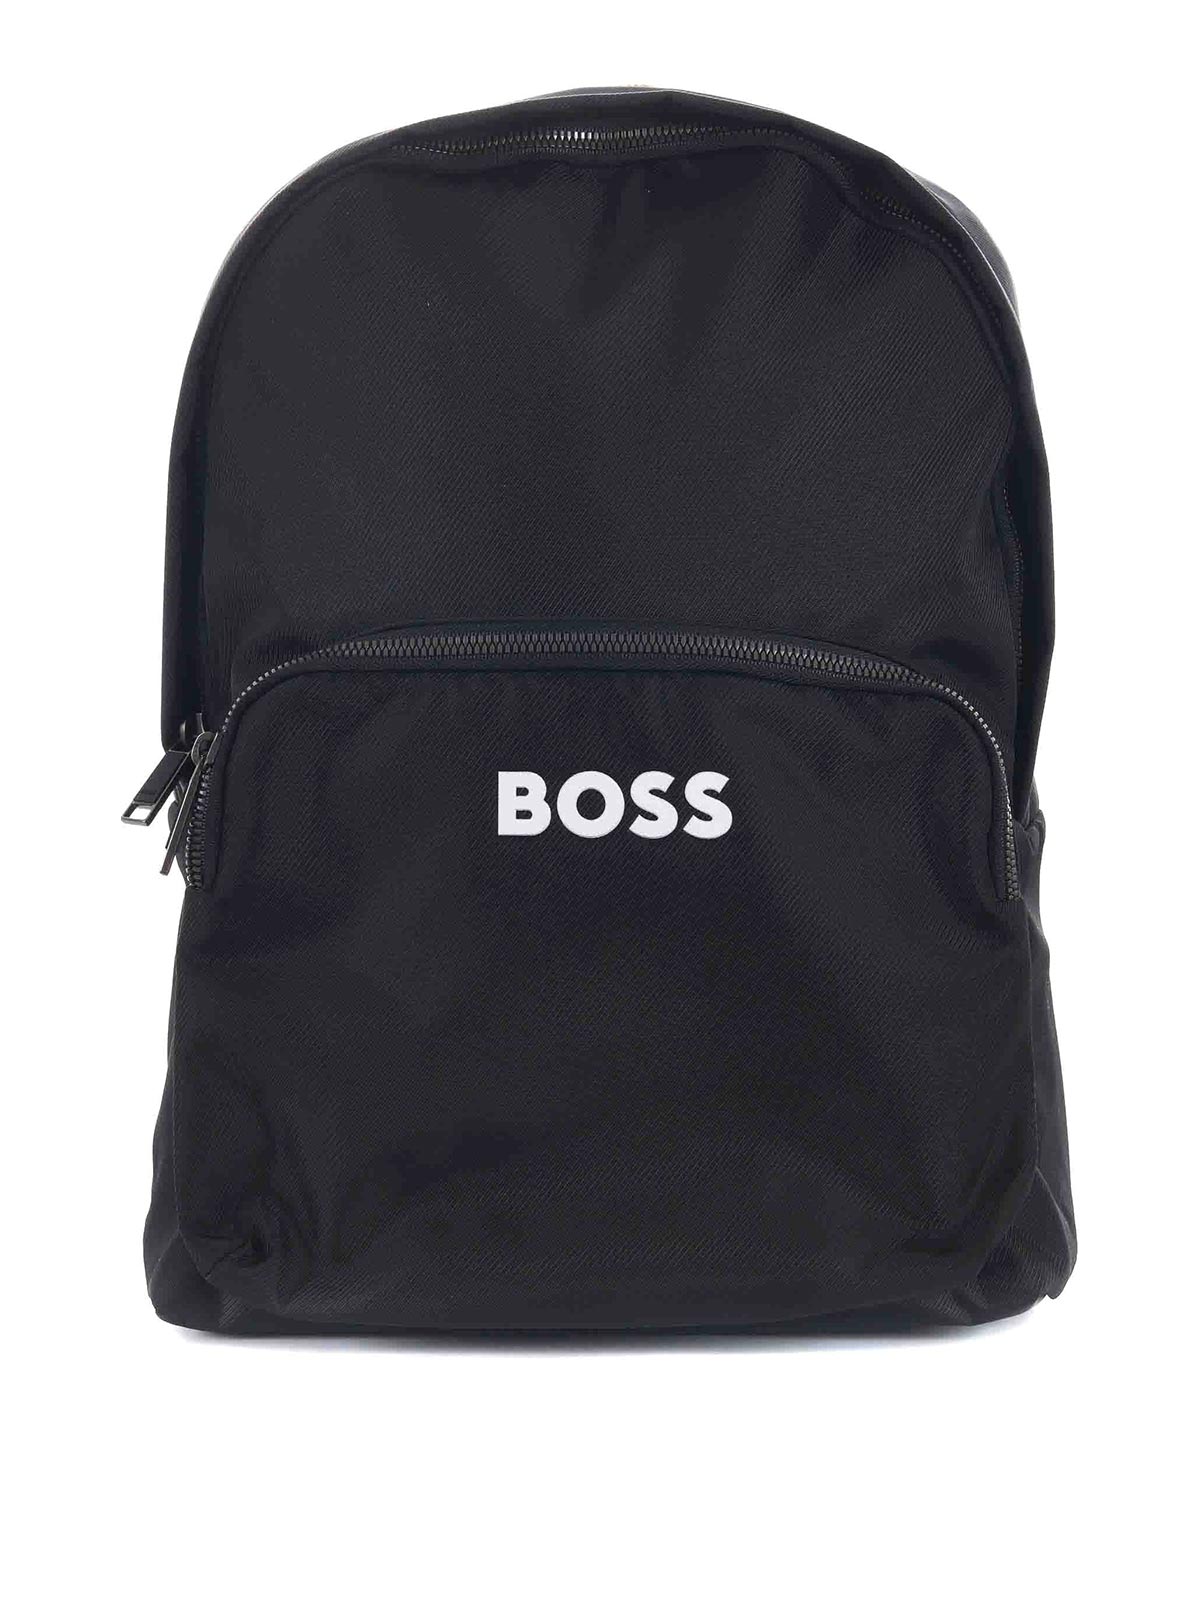 Hugo Boss Backpack In Black